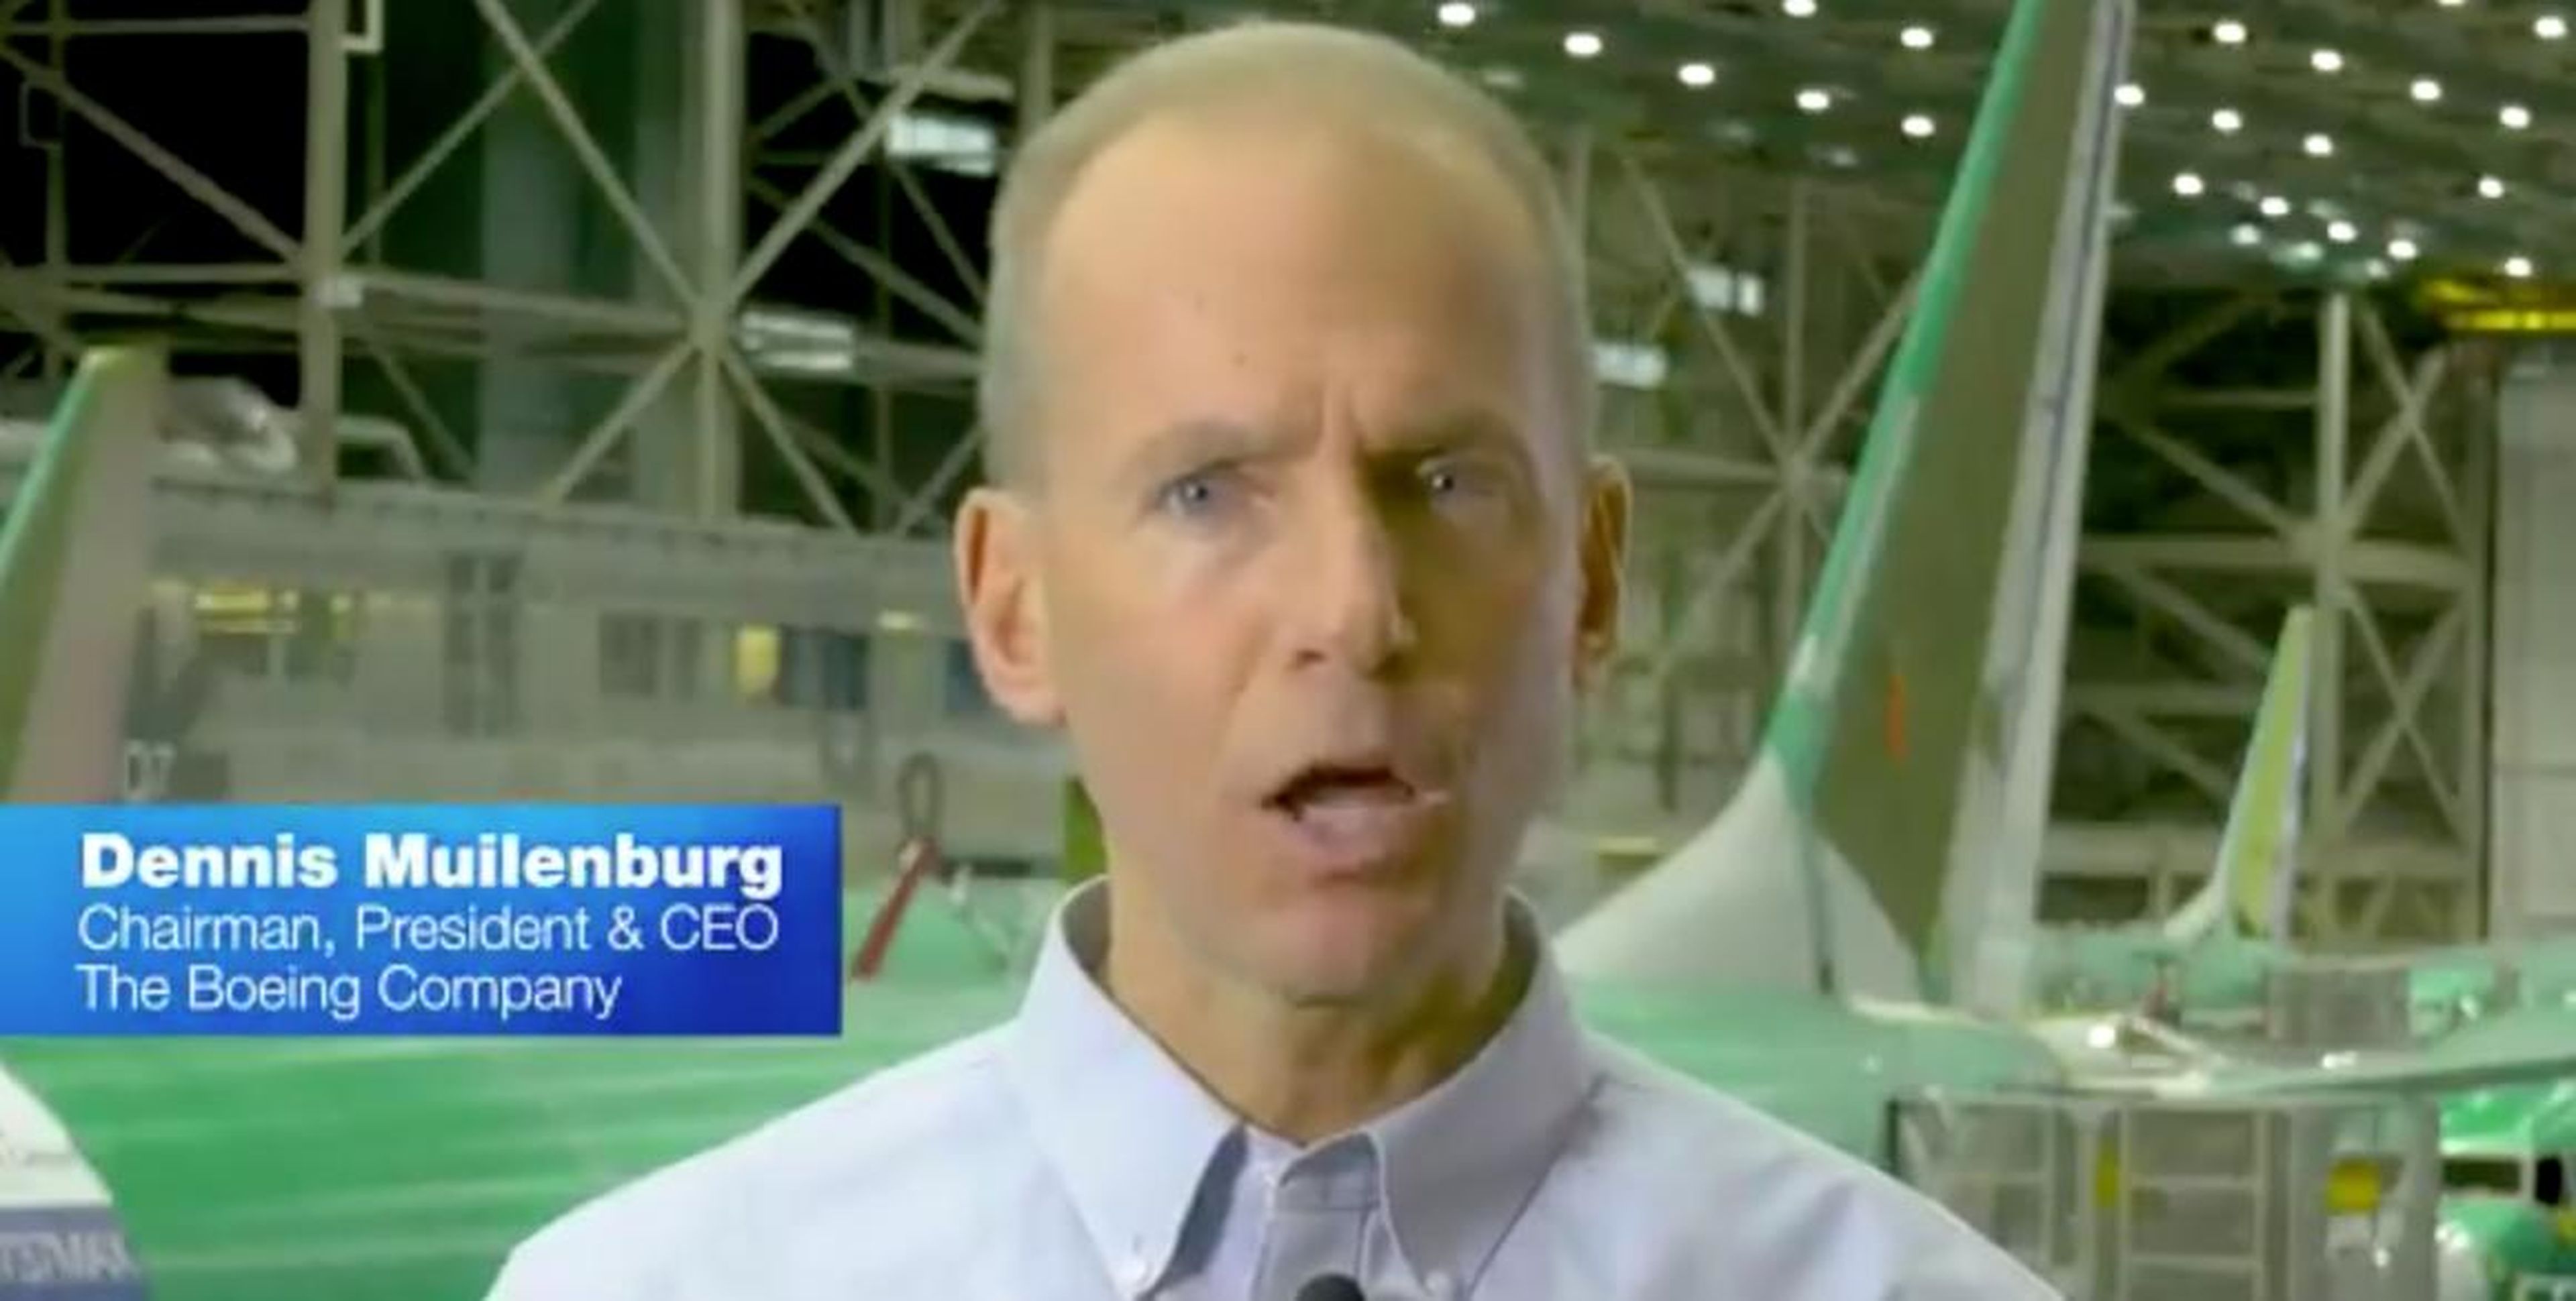 El CEO de Boeing, Dennis Muilenburg, compartía un vídeo de disculpa tras el segundo accidente mortal del 737 Max.